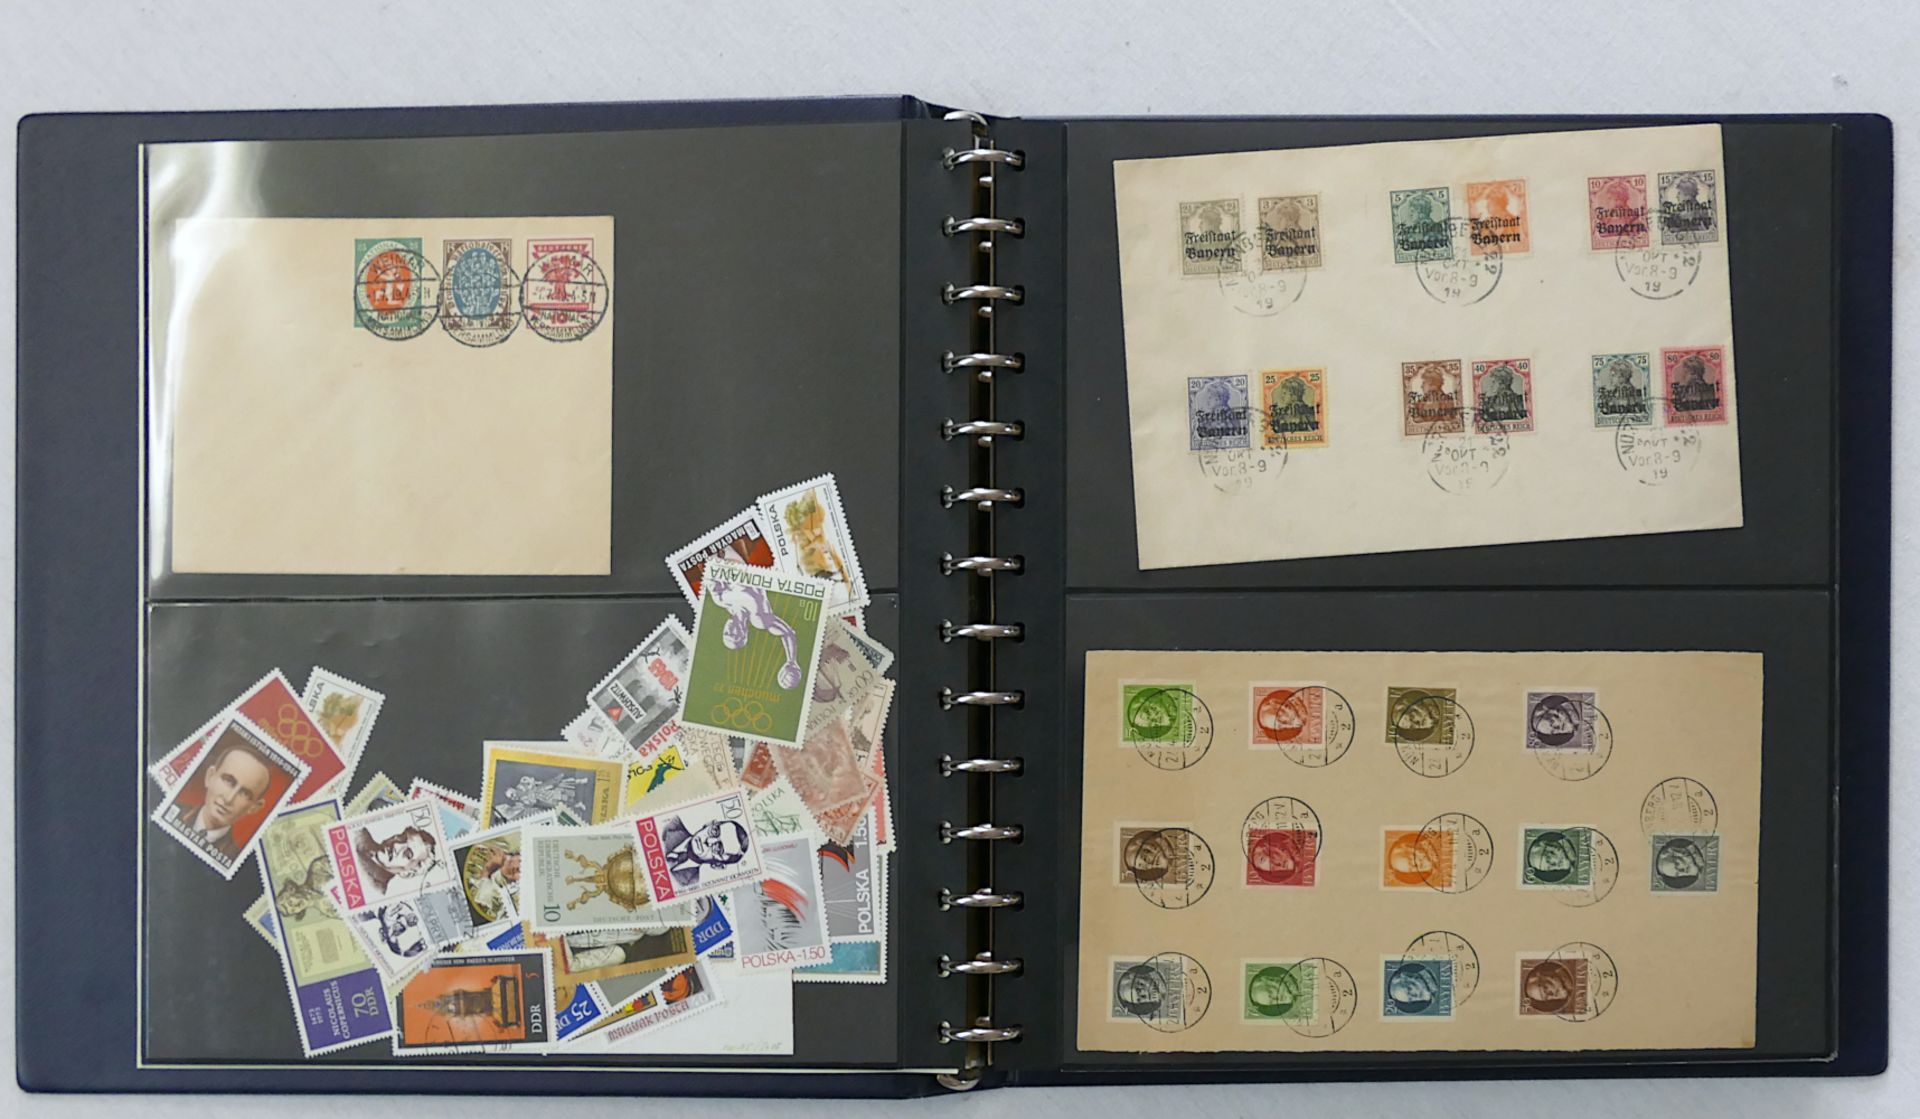 1 Ordner mit Briefmarken Deutsches Reich, Bayern (Freistaat/Volksstaat), Österreich, Lettland, Zone